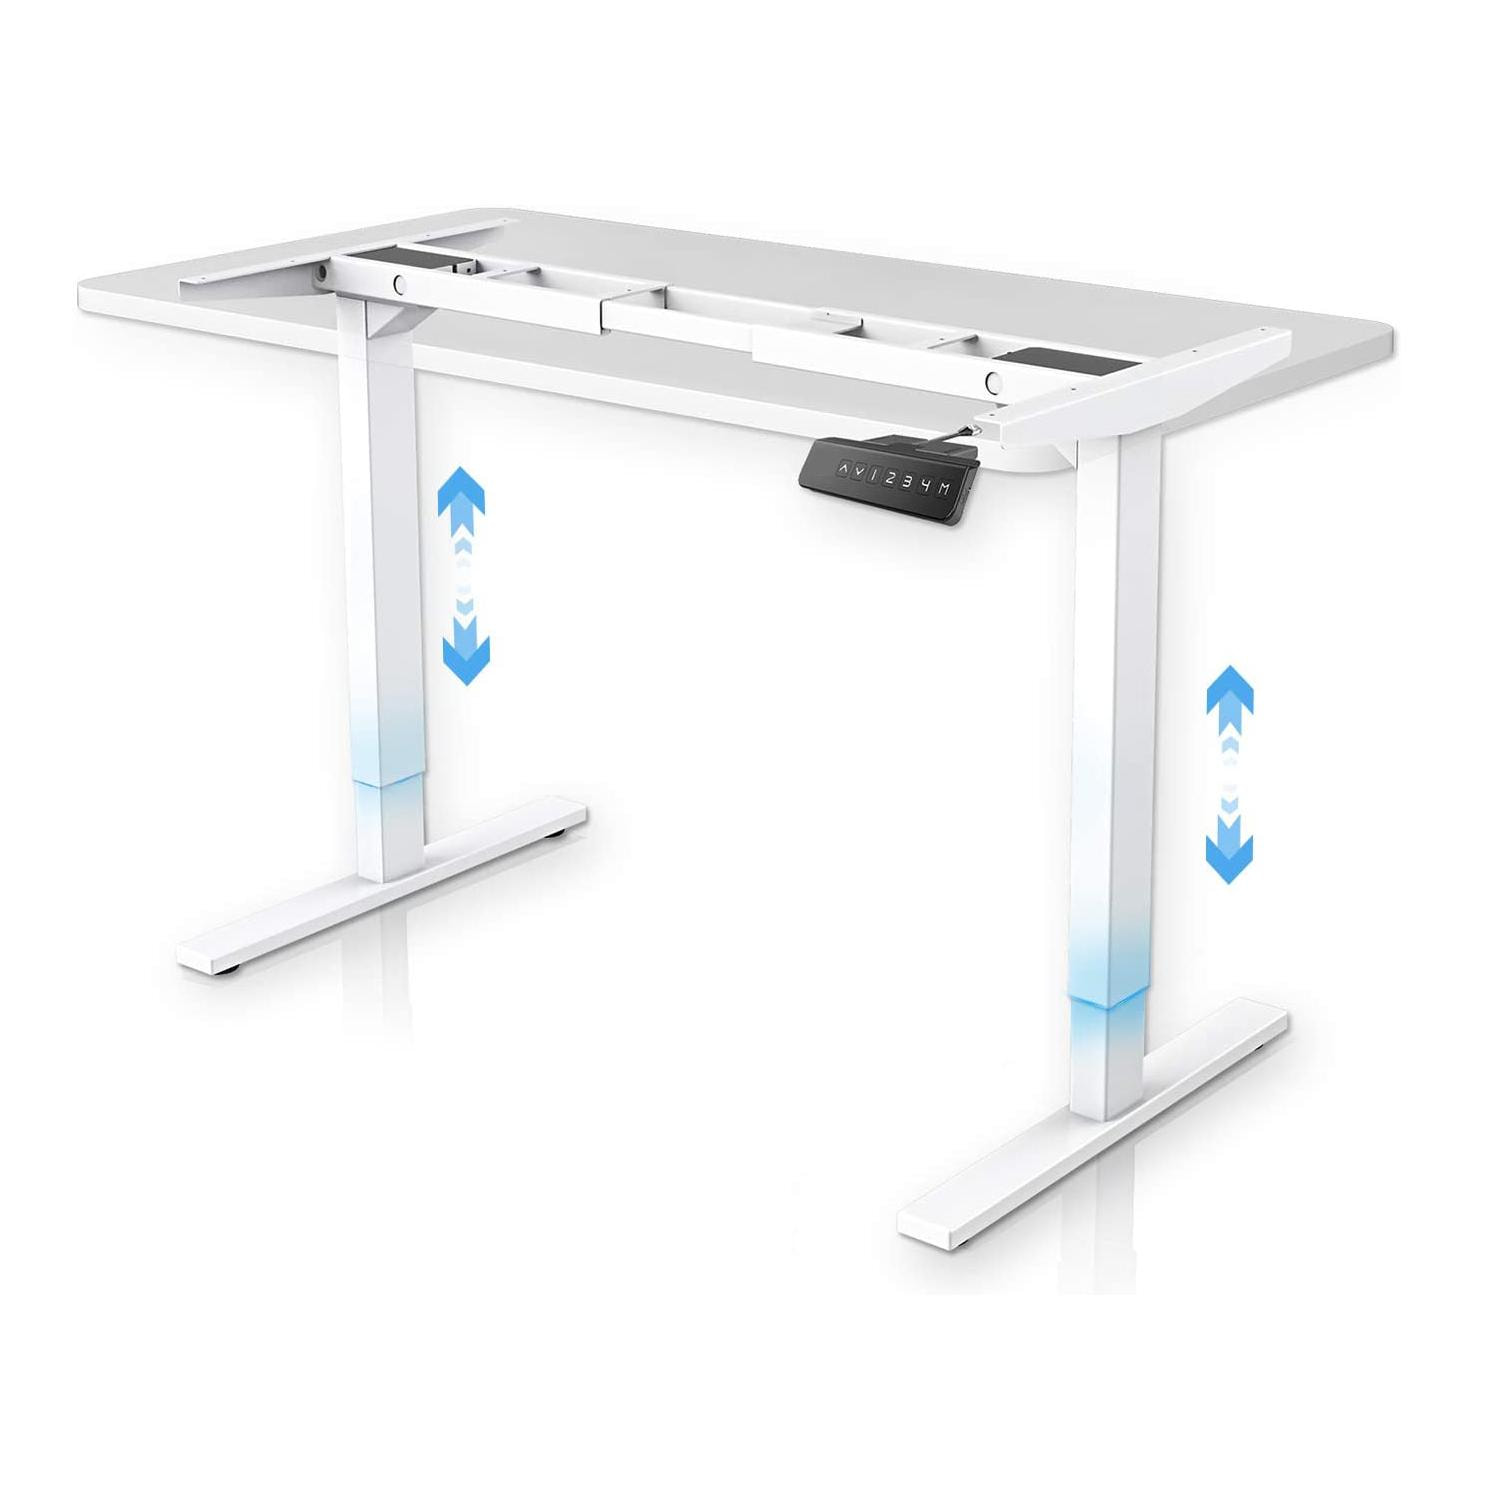 FrankyStar - Stand Up Desk scrivania elettrica con tecnologia dual motor, con regolazione digitale.